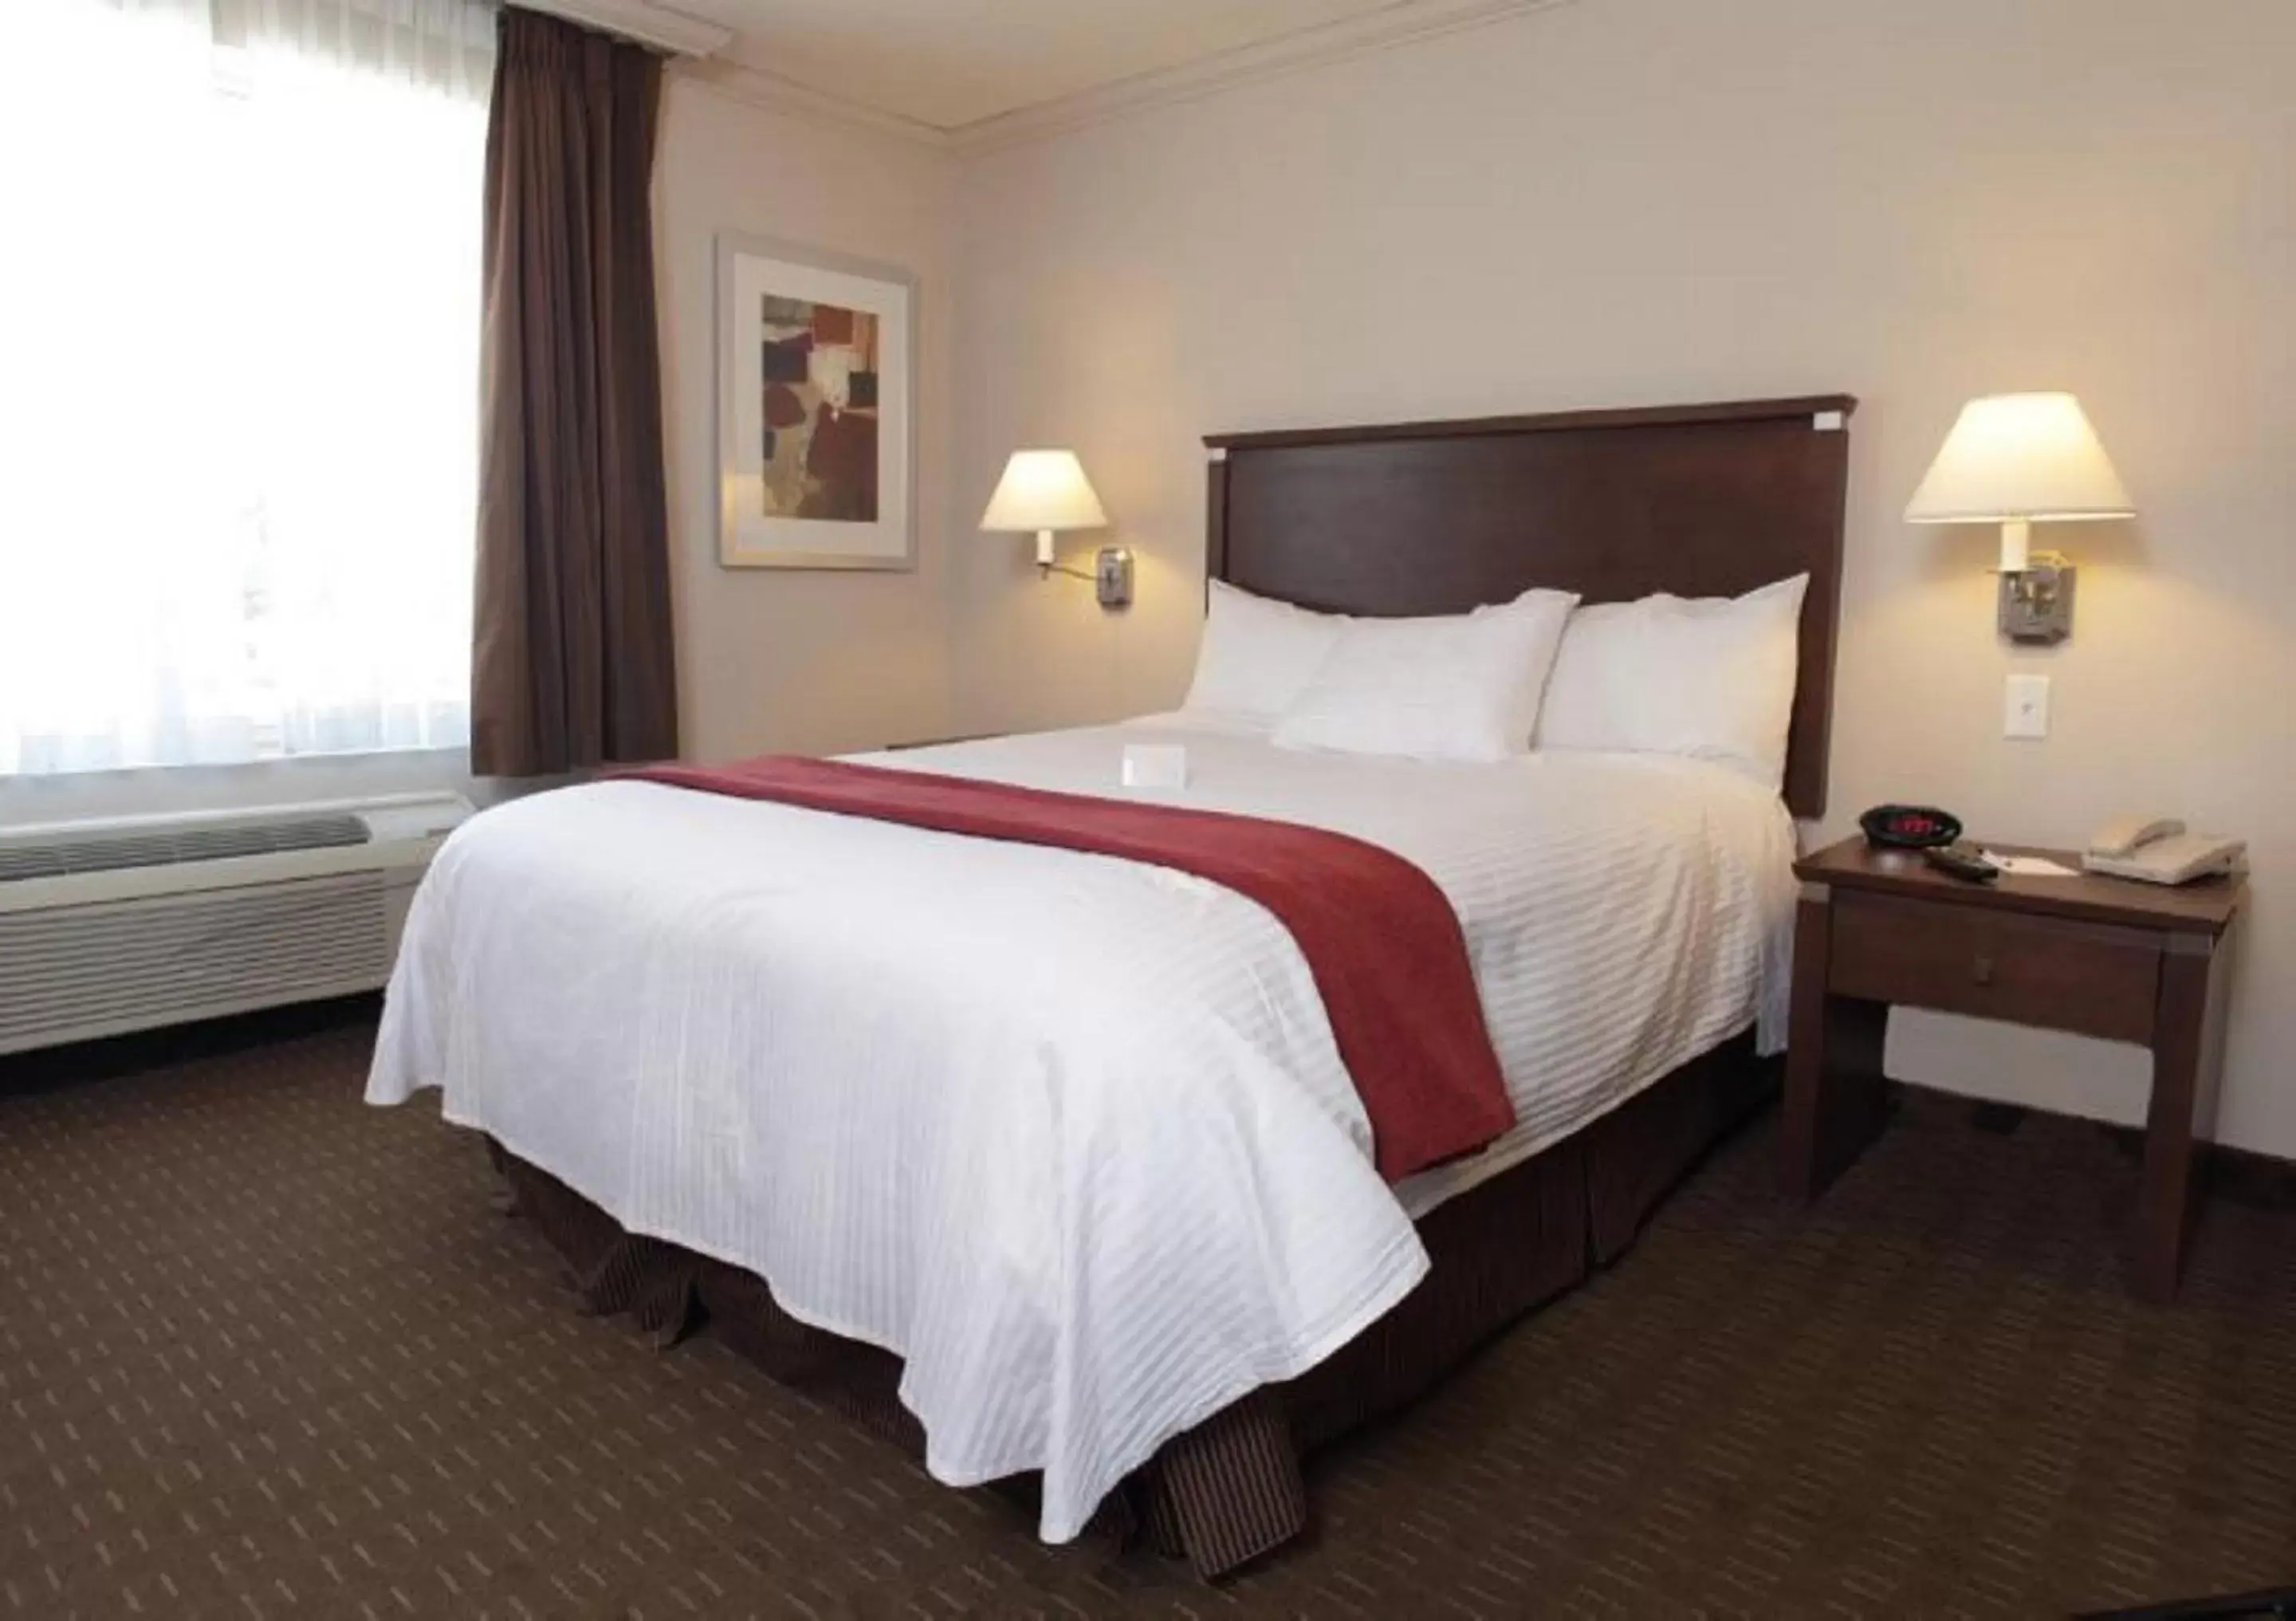 Bedroom, Bed in Best Western Plus Guildwood Inn